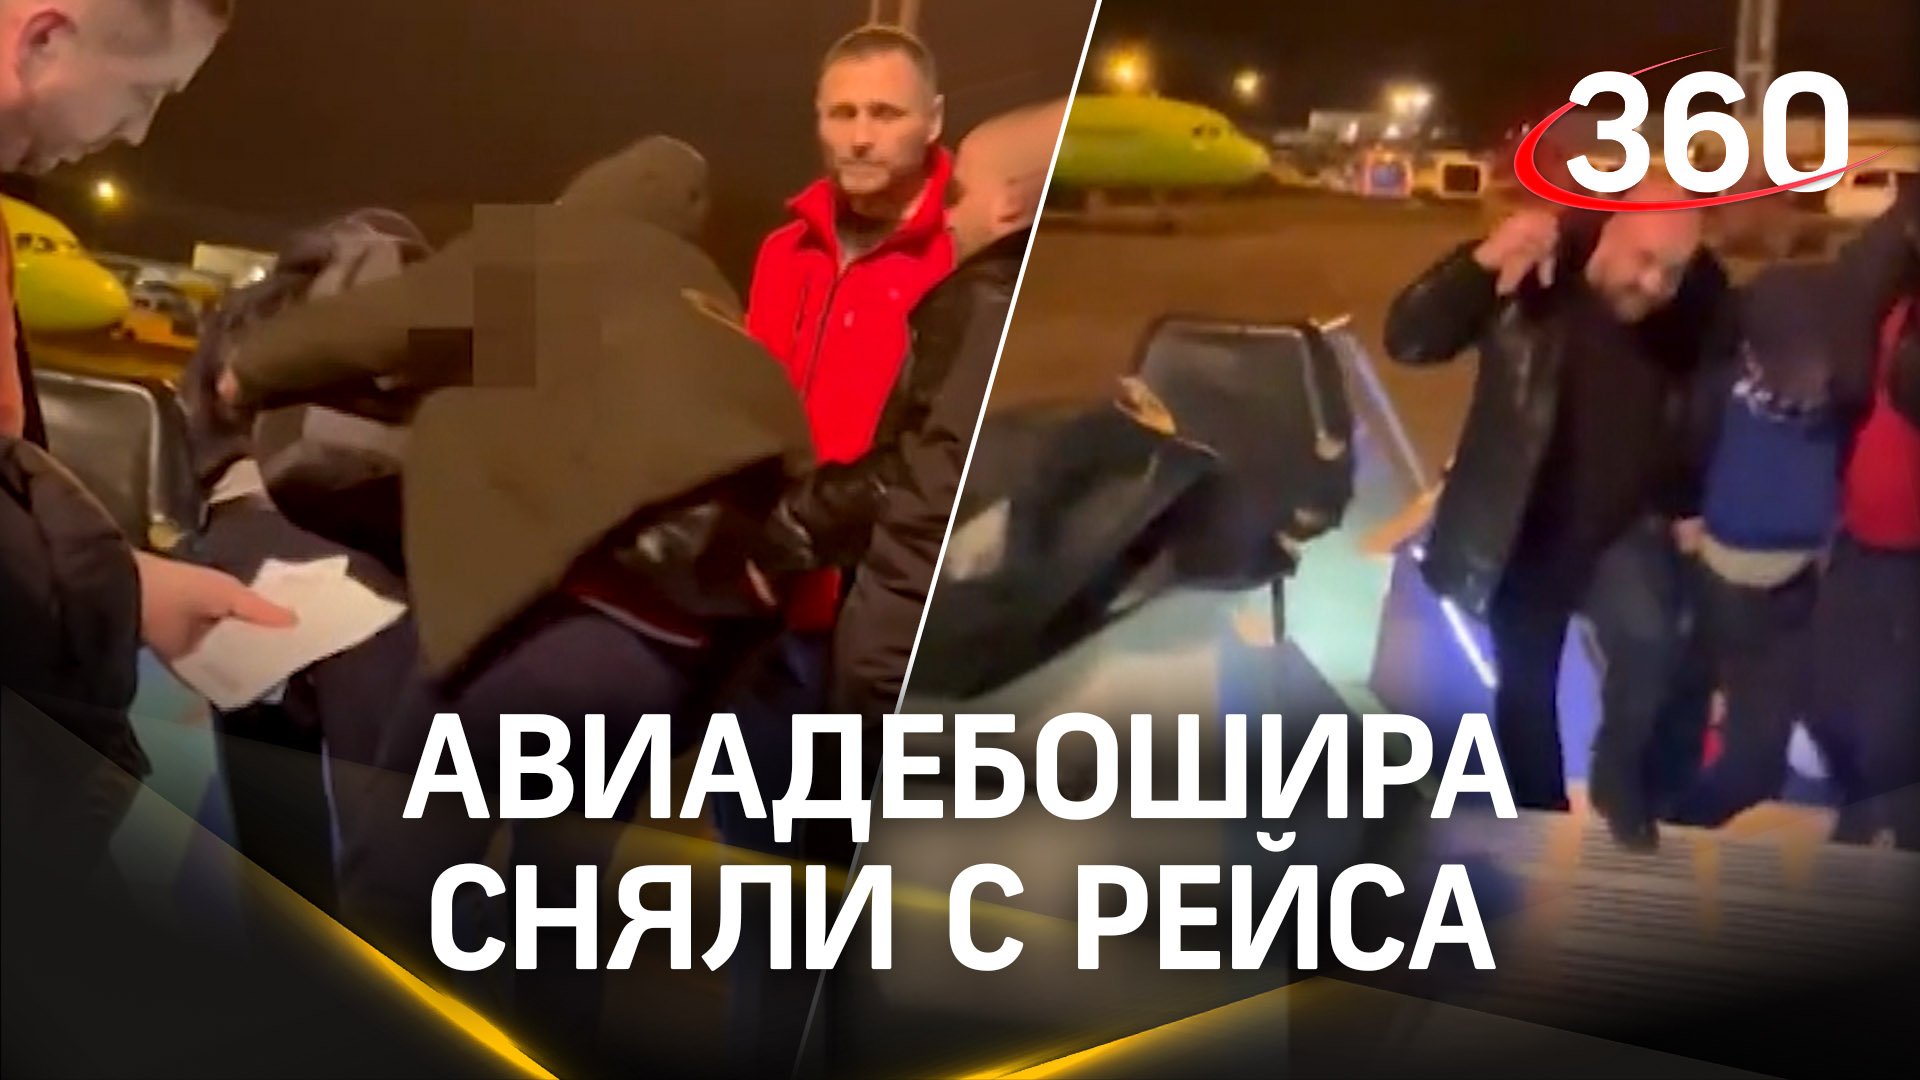 Видео: ирония судьбы в Домодедово - авиадебоширов скрутили на взлётной полосе